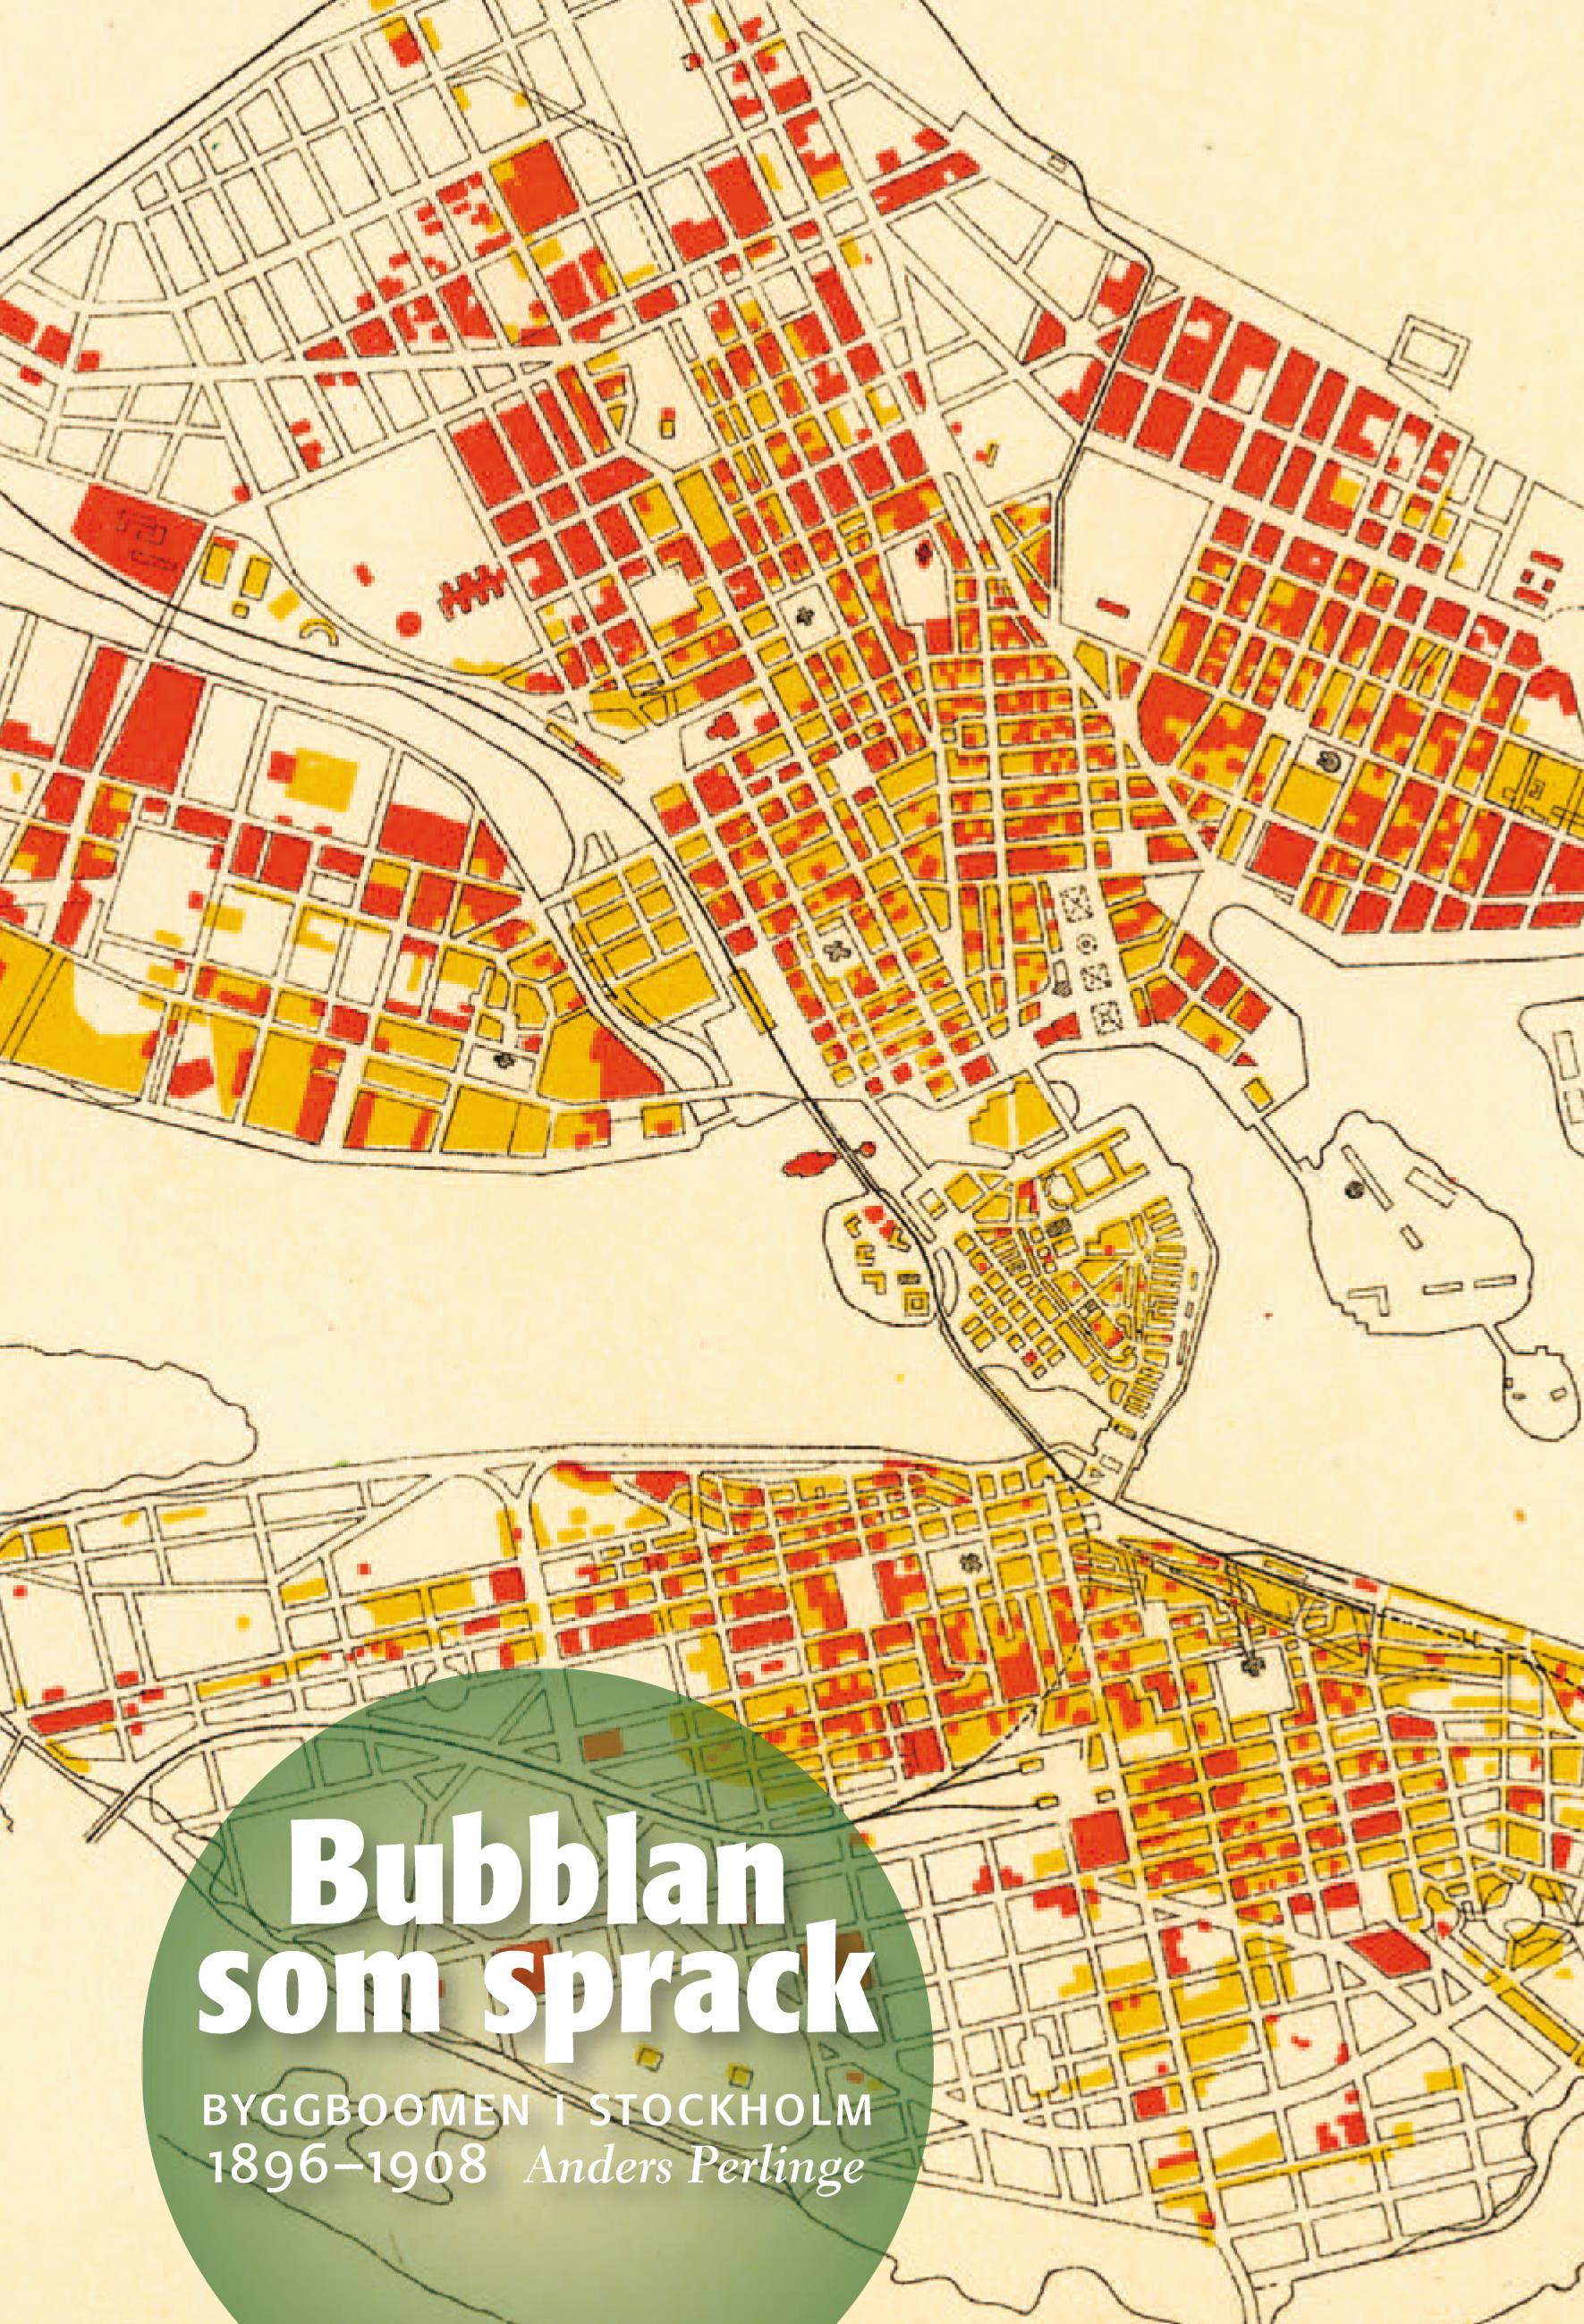 Bubblan som sprack : byggboomen i Stockholm 1896-1908